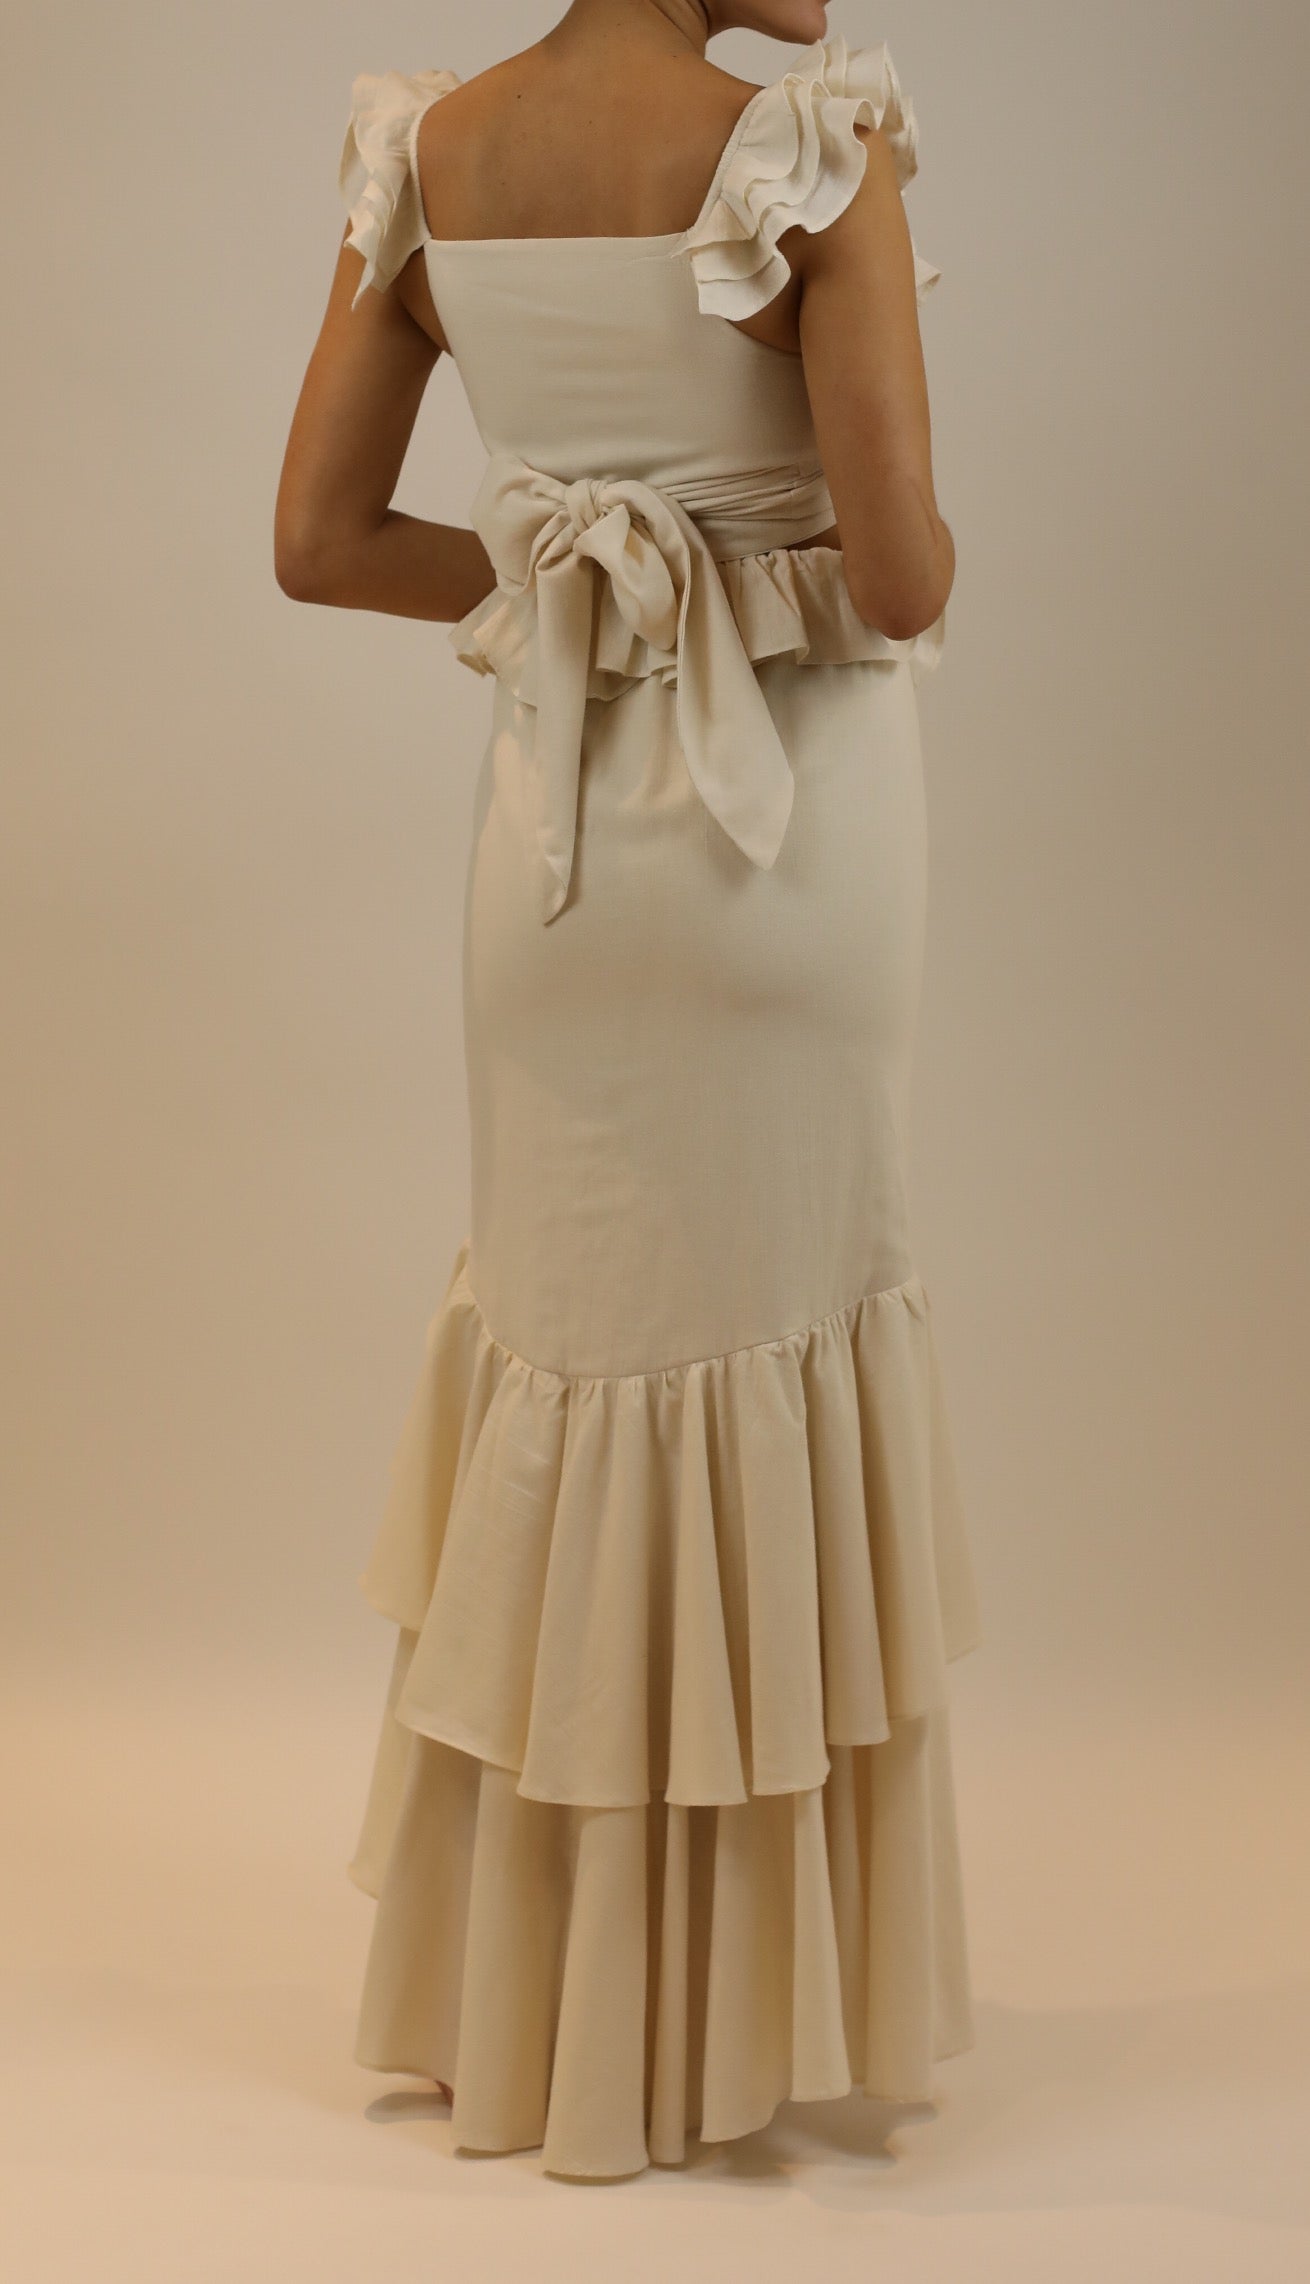 raina ruffed skirt in off white